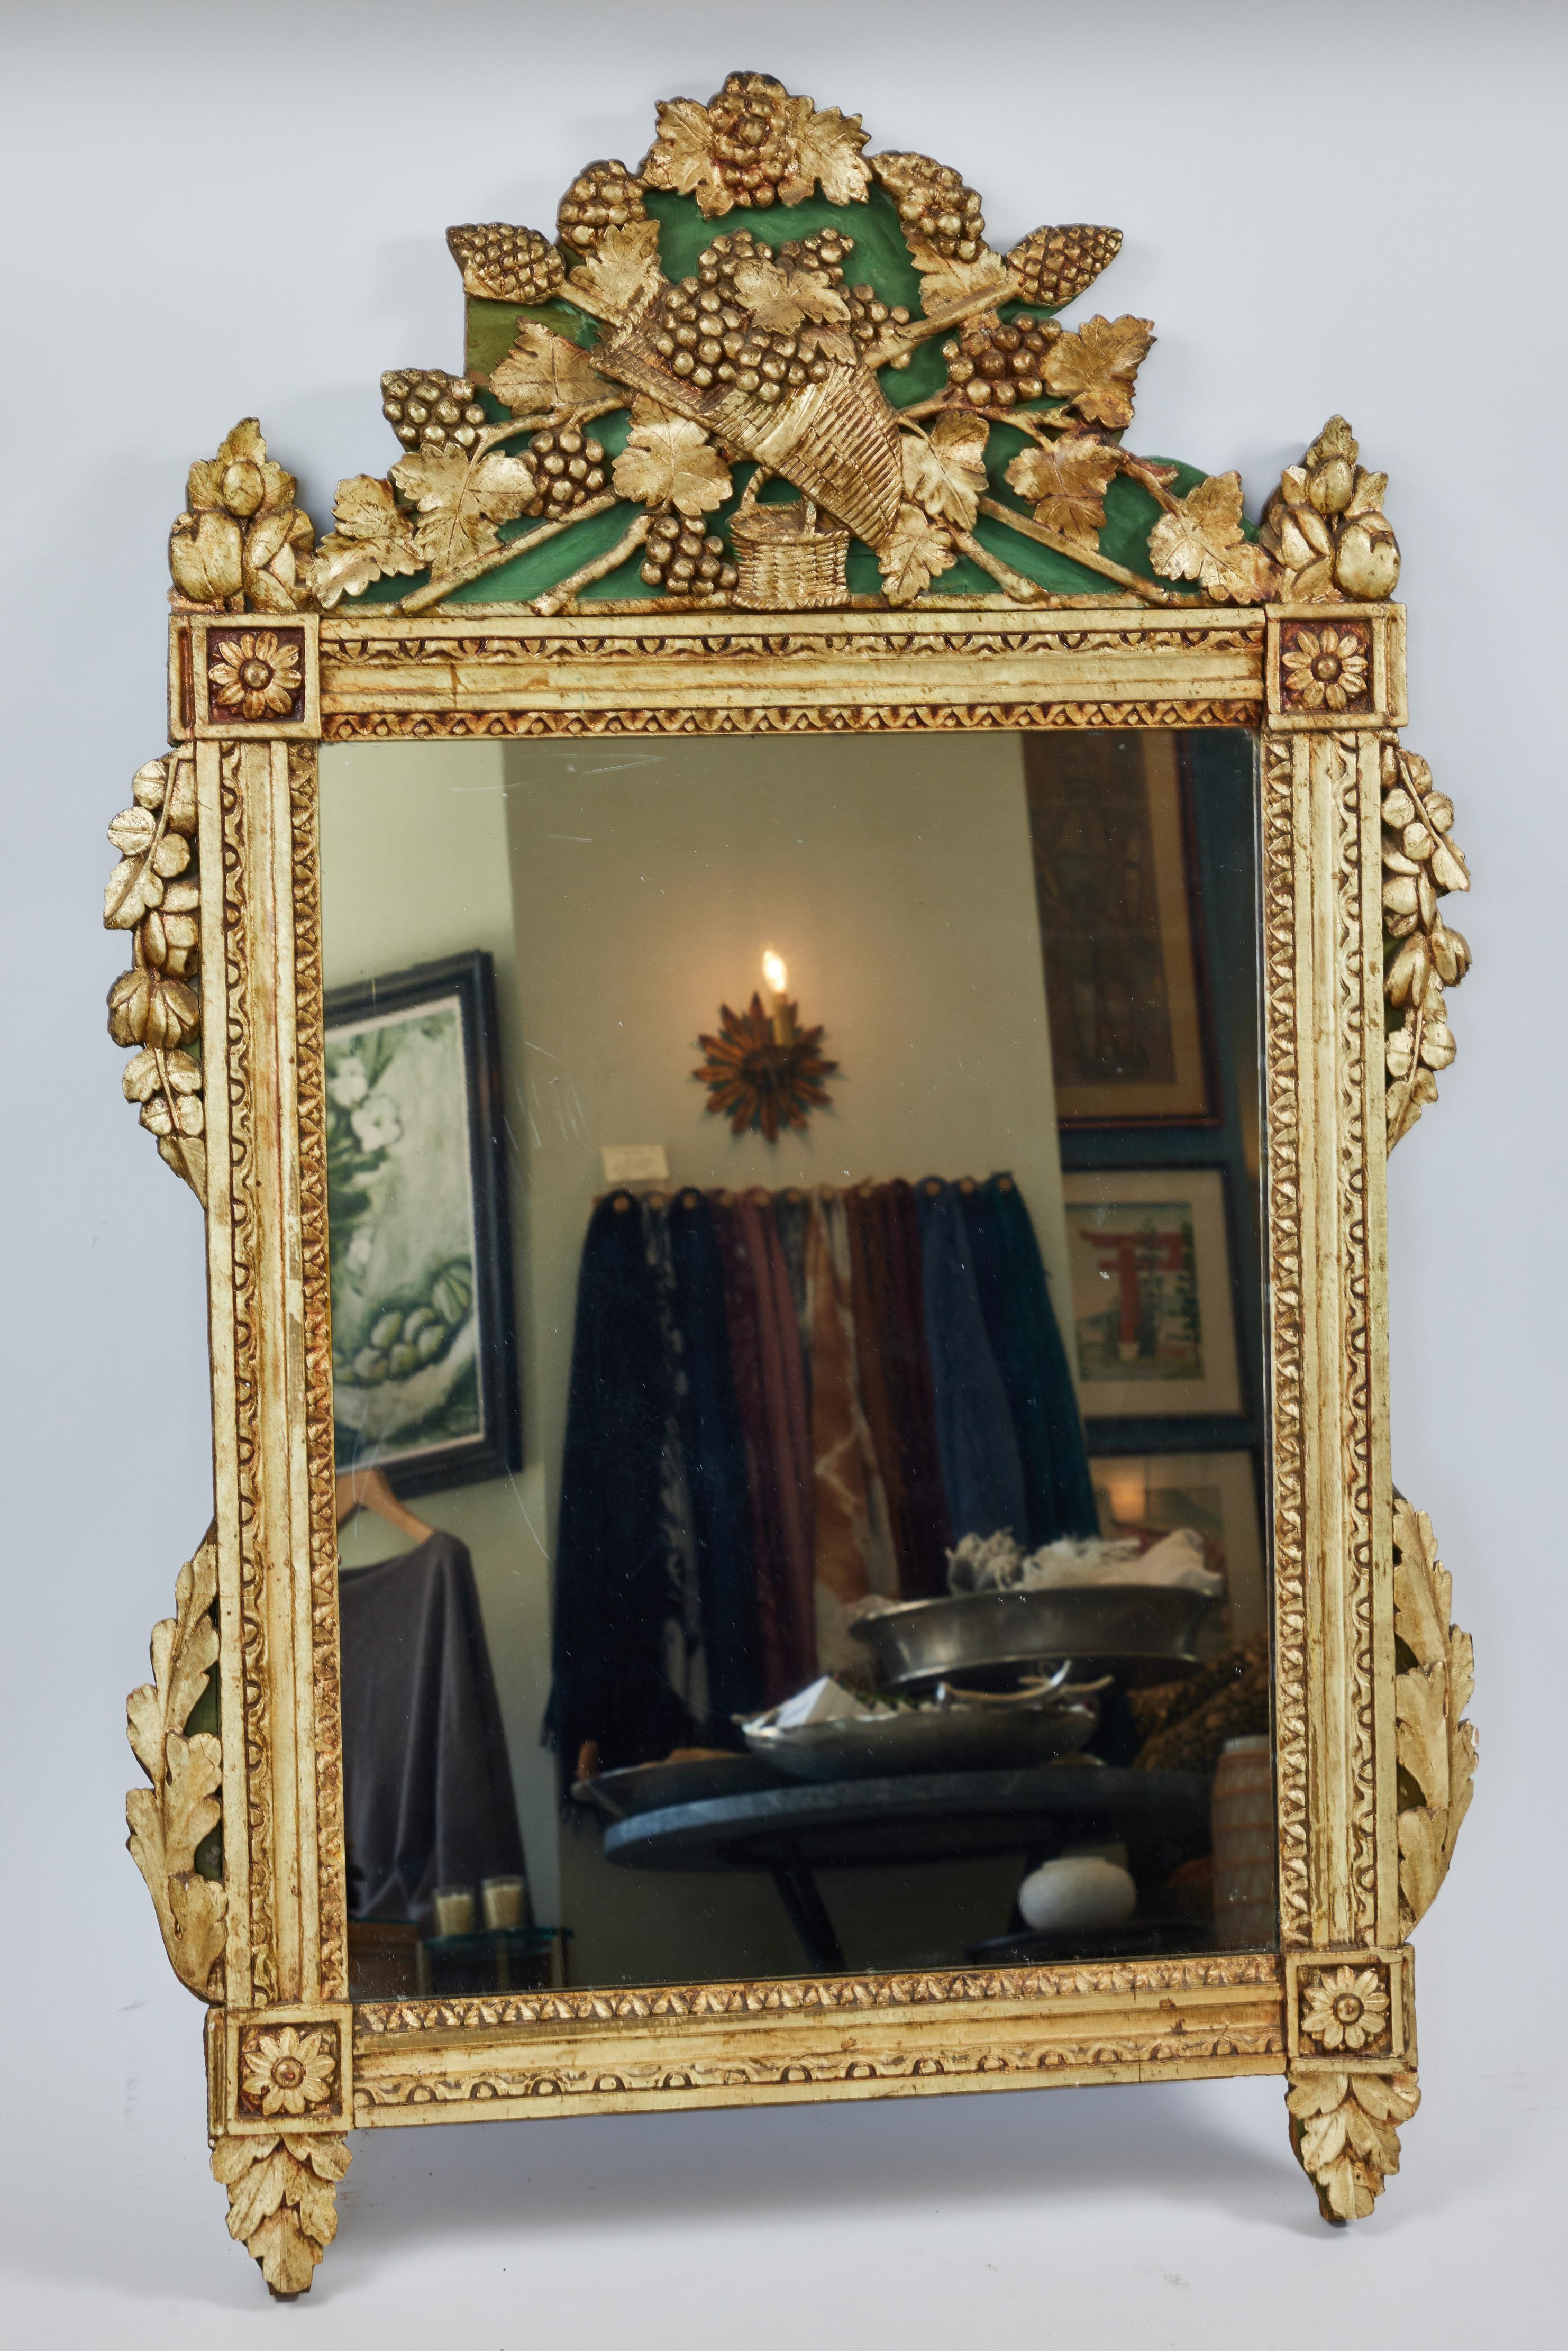 Antiker handgeschnitzter Holzspiegel, original vergoldet

Es verfügt über eine dekorative cornucopian Korb und detaillierte Weinreben auf der Krone, gibt es komplizierte Blatt-Motiv auf den Seiten und unten, florale Medaillons an jeder Ecke, hat